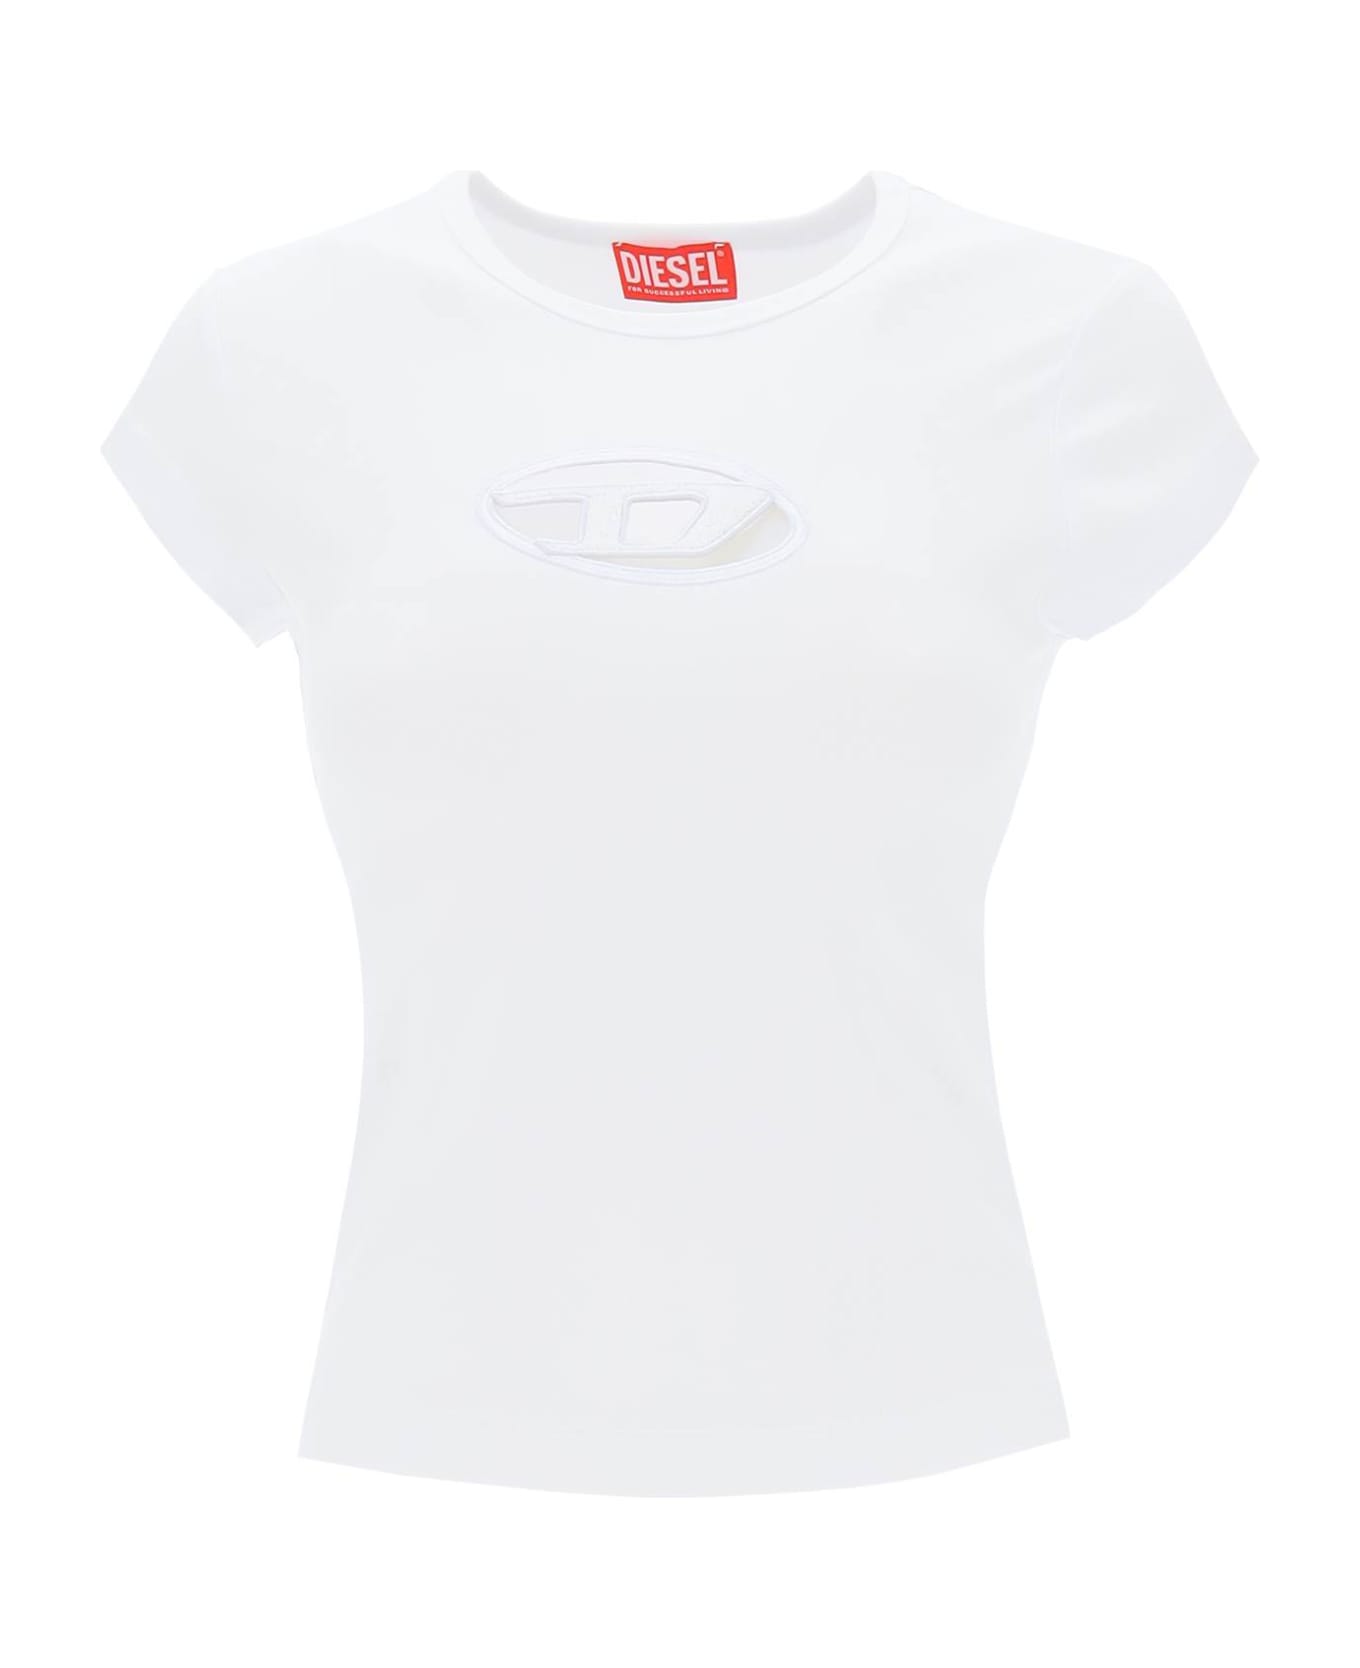 Diesel T-angie Cotton Crew-neck T-shirt - White